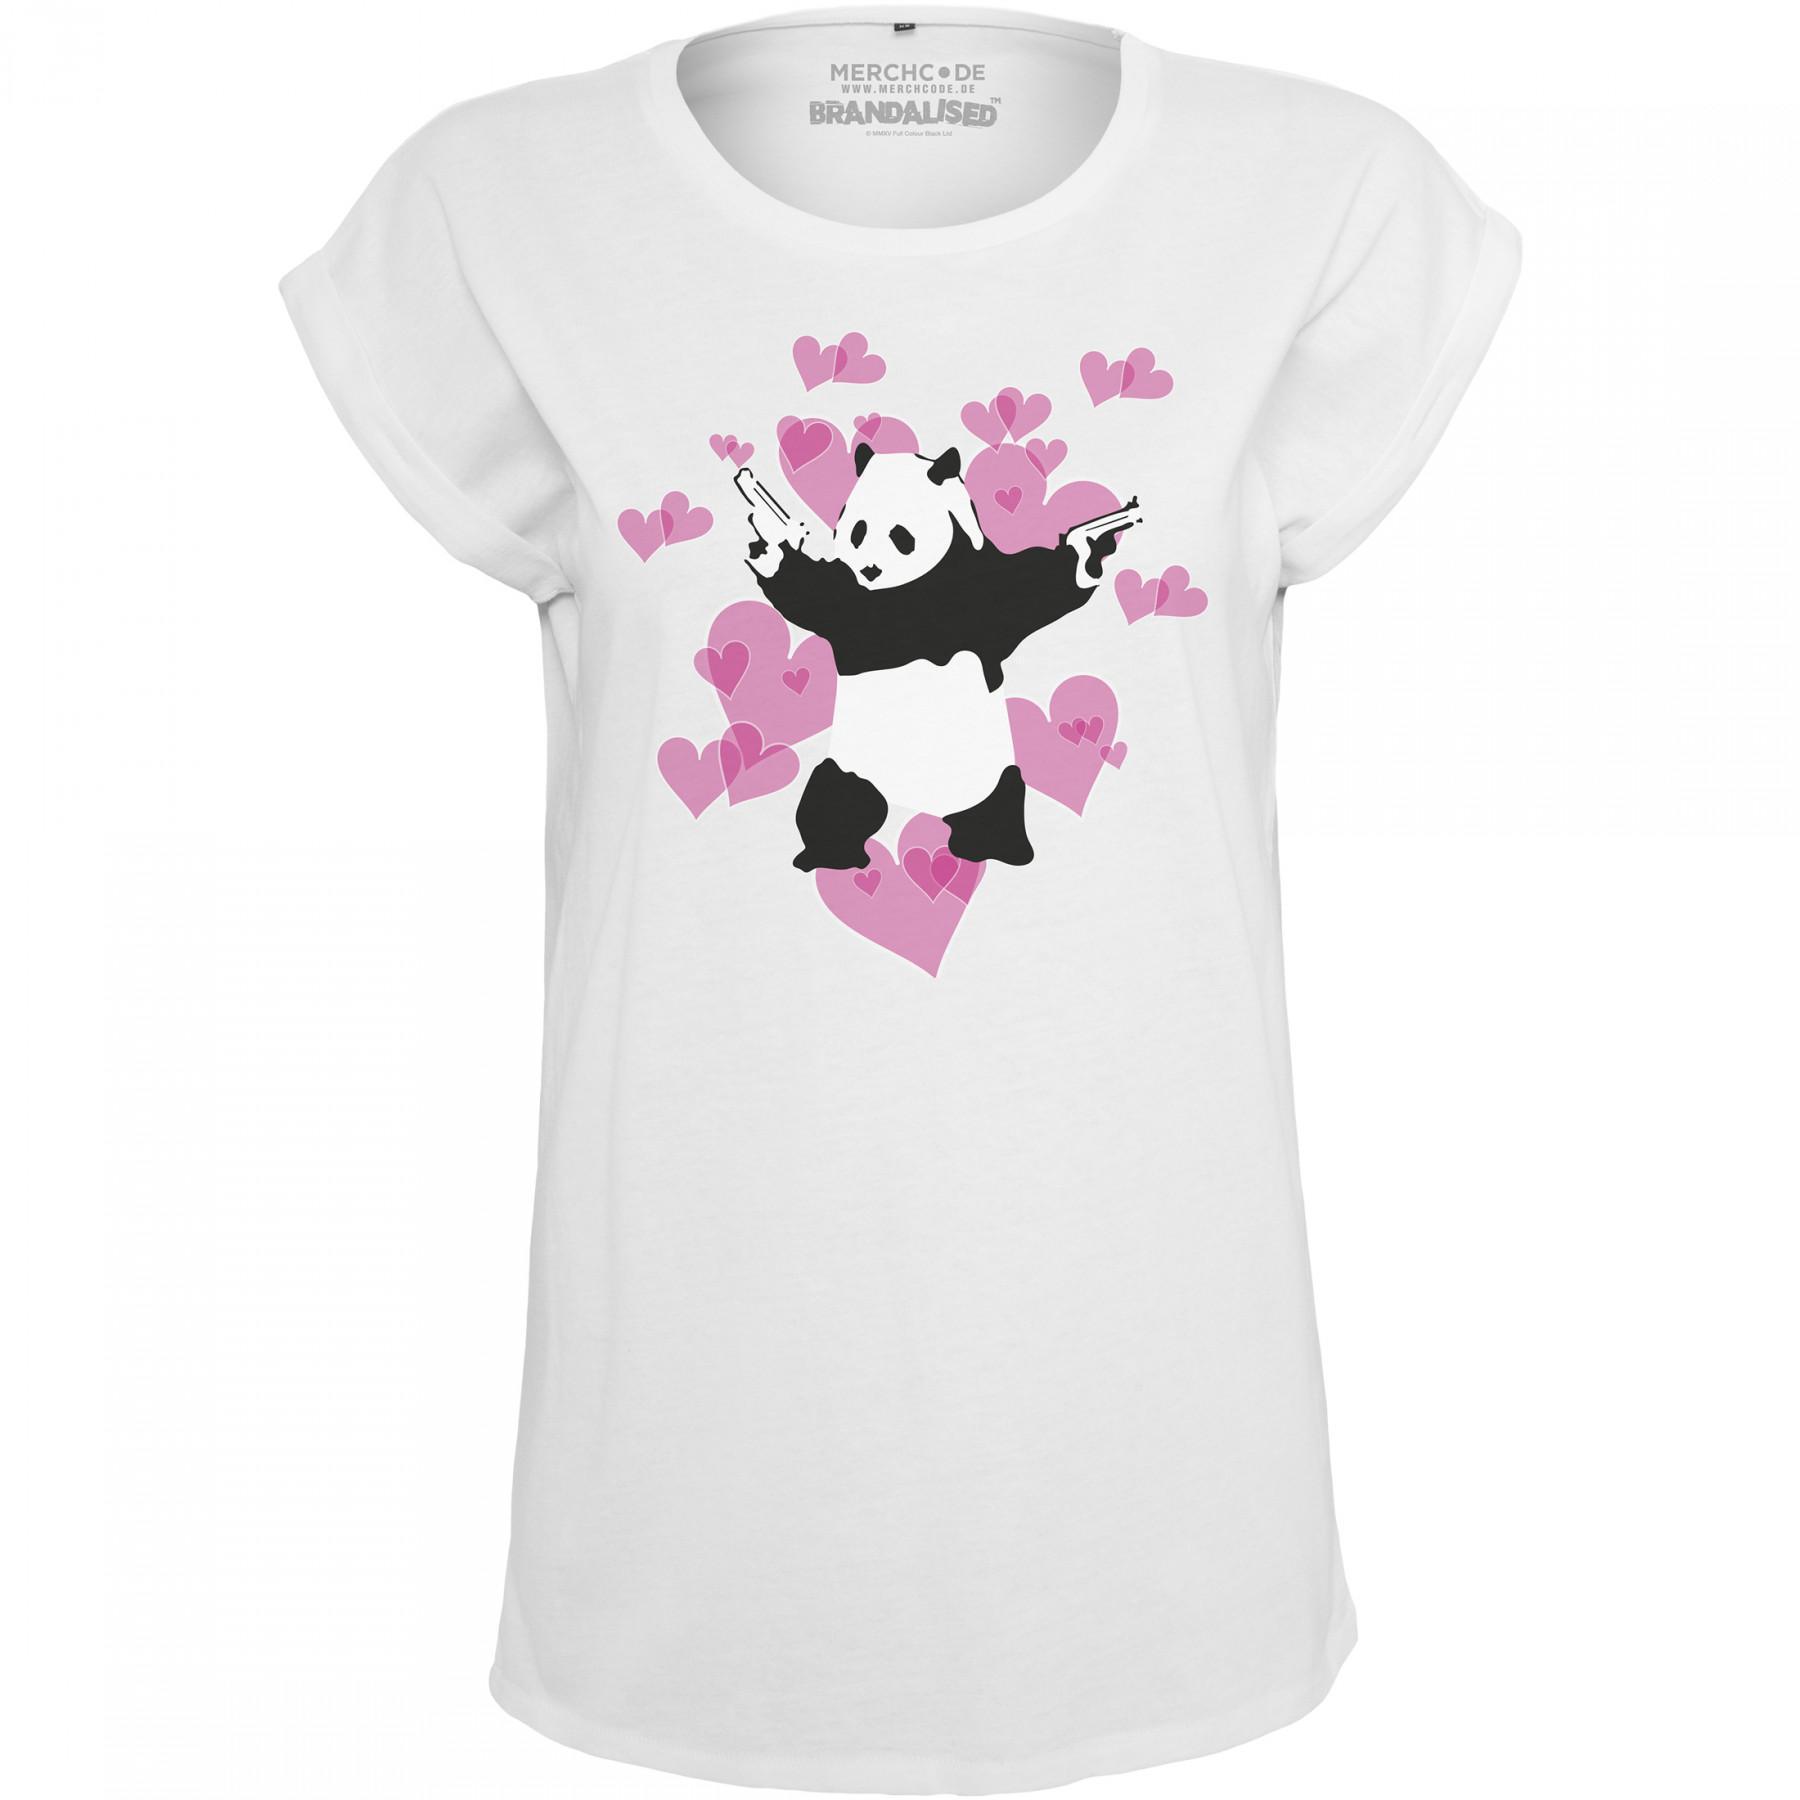 T-shirt woman Urban Classic banky panda heart